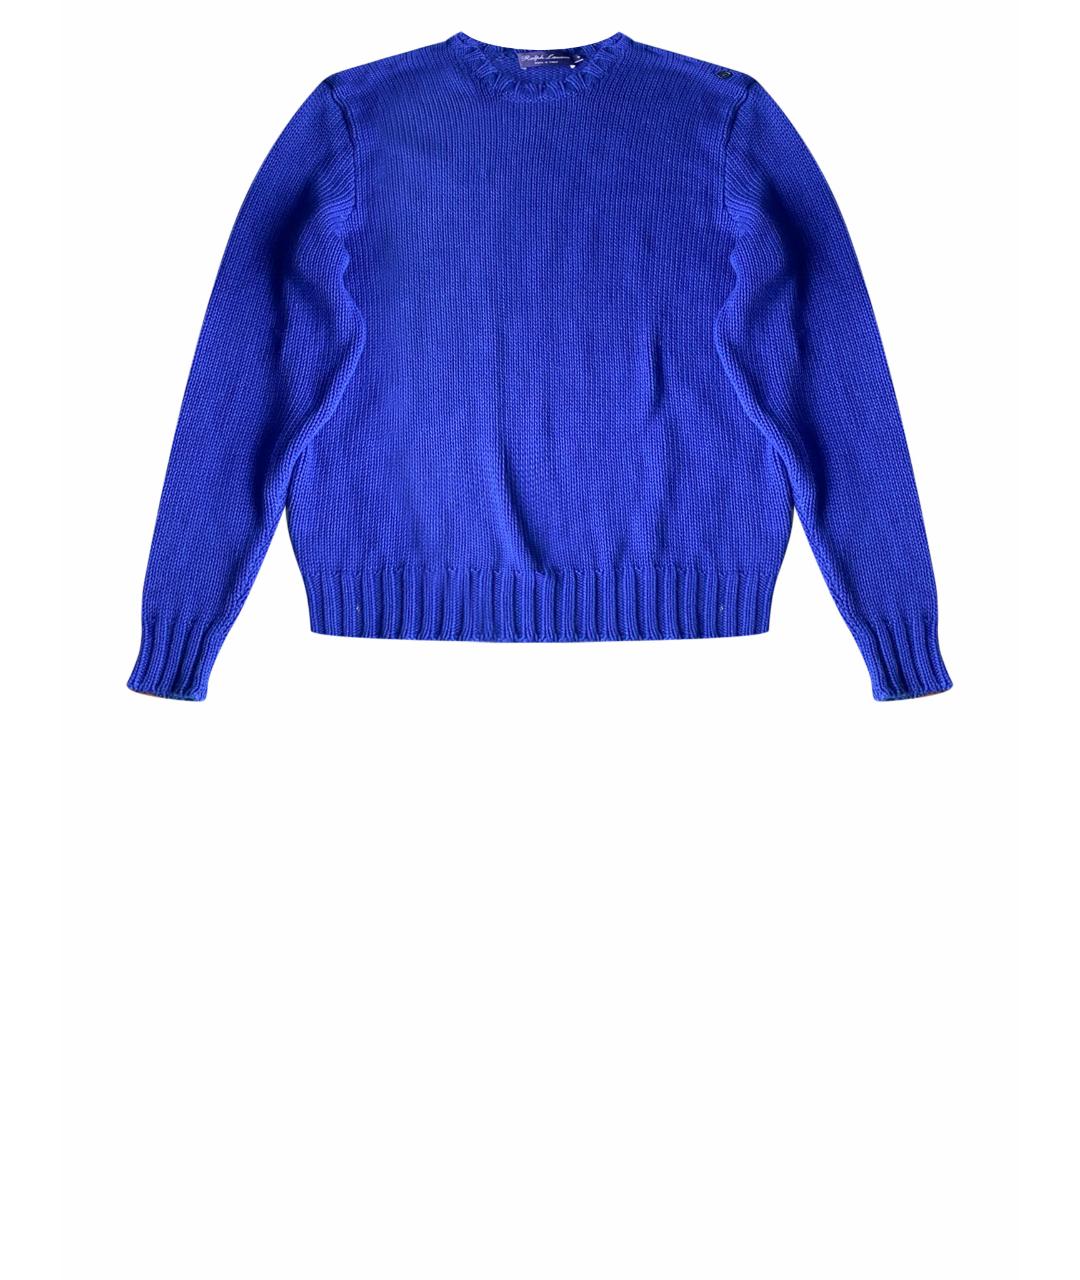 RALPH LAUREN Синий хлопковый джемпер / свитер, фото 1